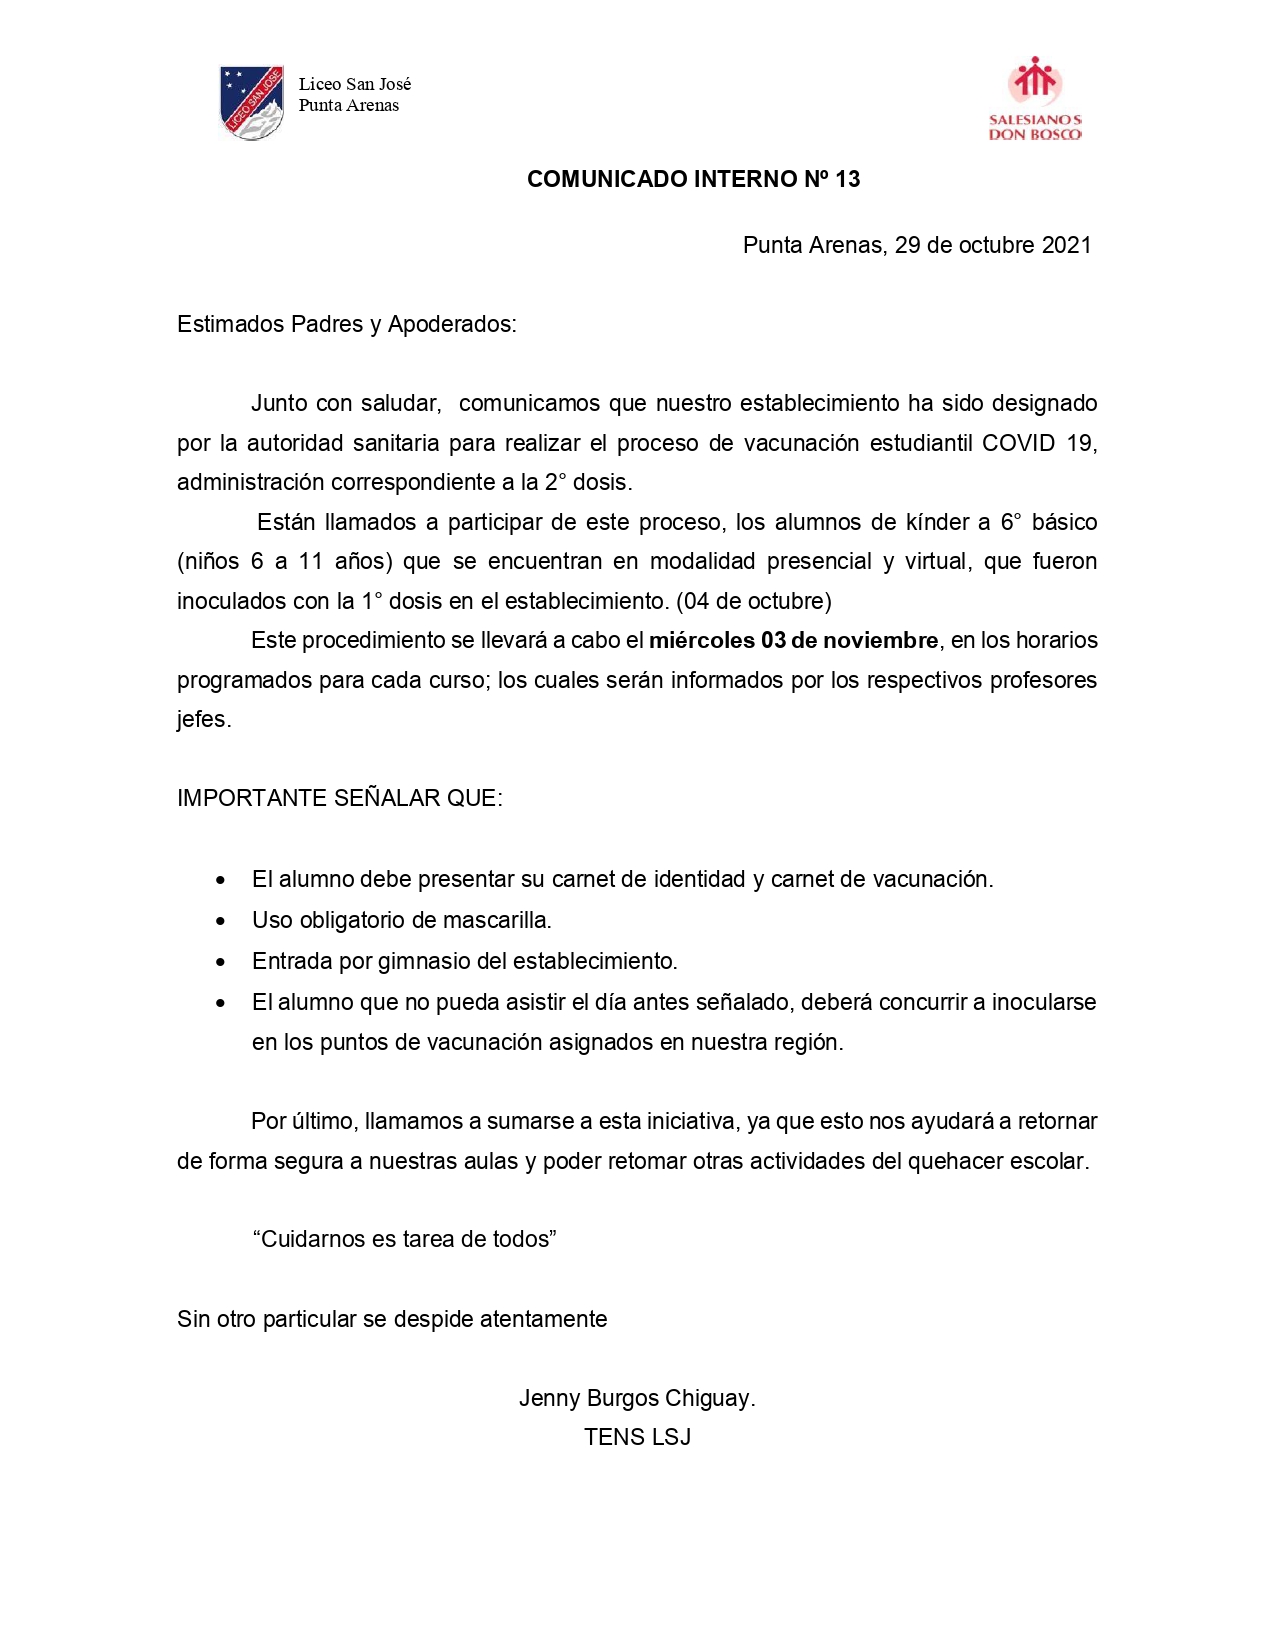 Comunicado Interno  Nº13 vacunacion covid_page-0001.jpg